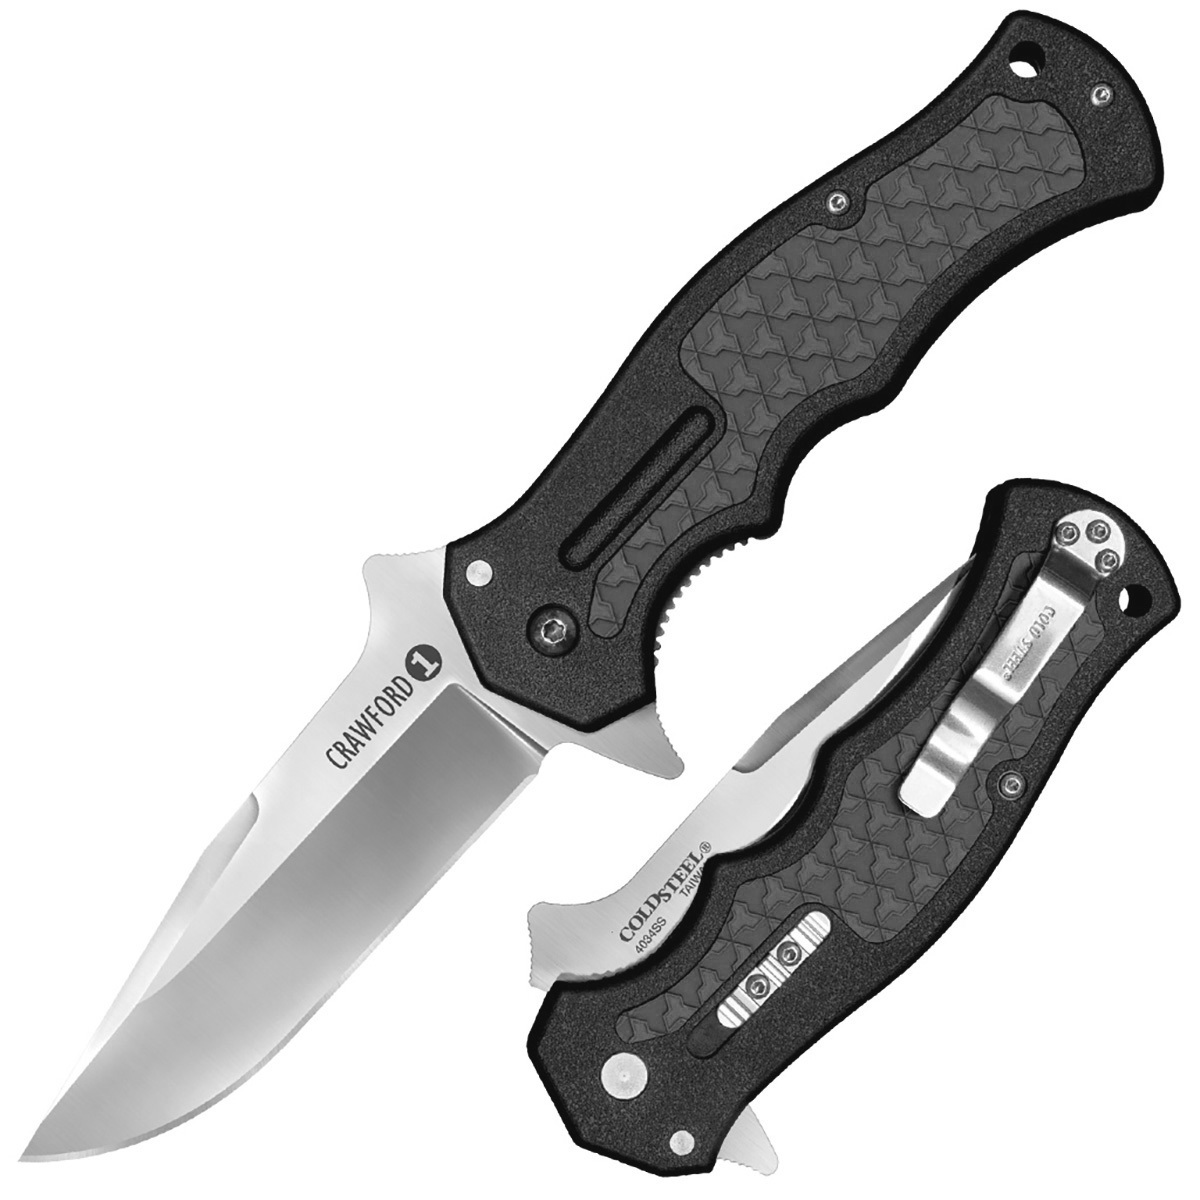 Нож складной Cold Steel Crawford Model 1 Black, сталь 1.4116, рукоять zytel, black, Бренды, Cold Steel